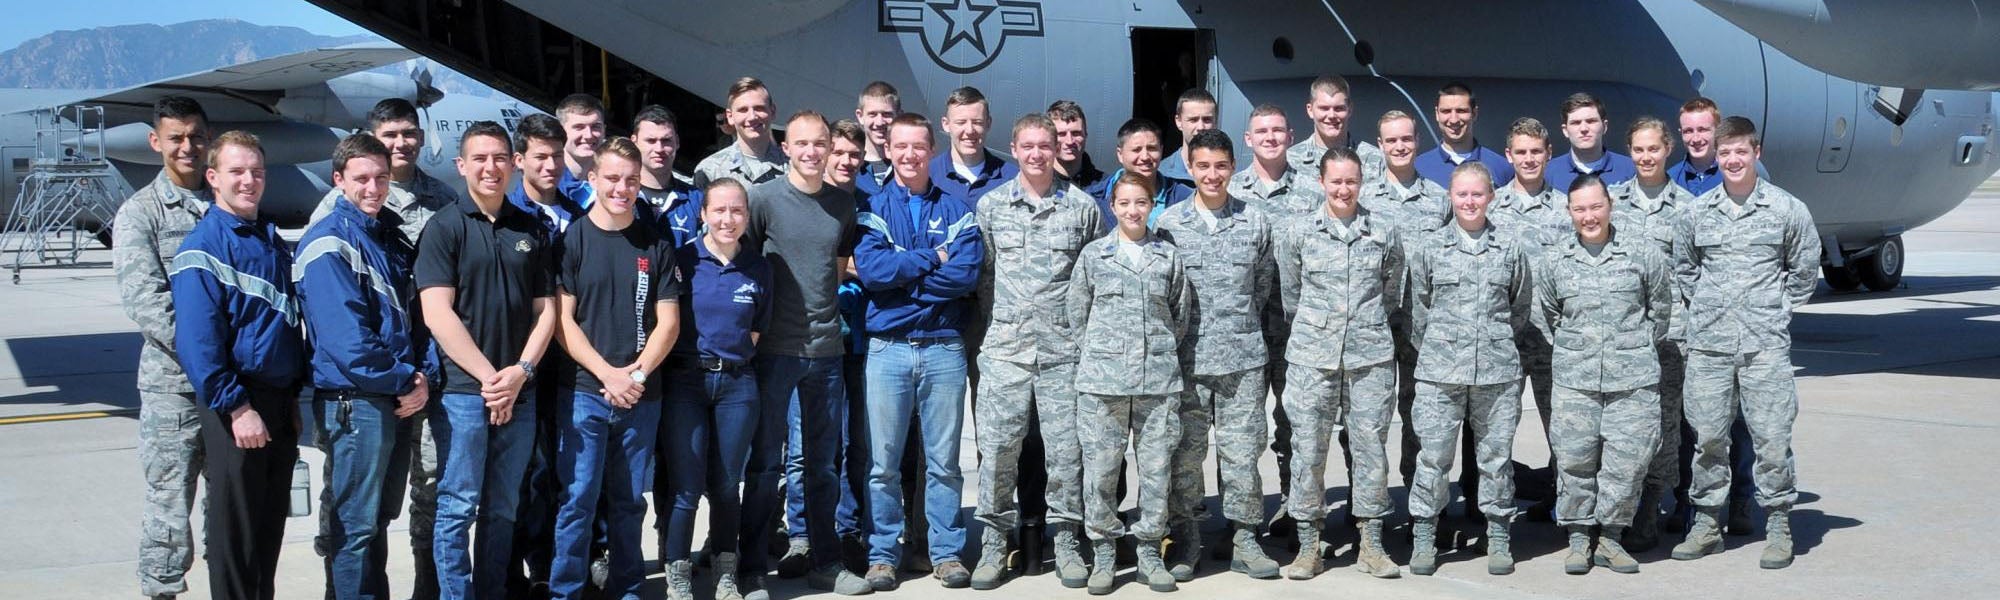 Air Force alumni 